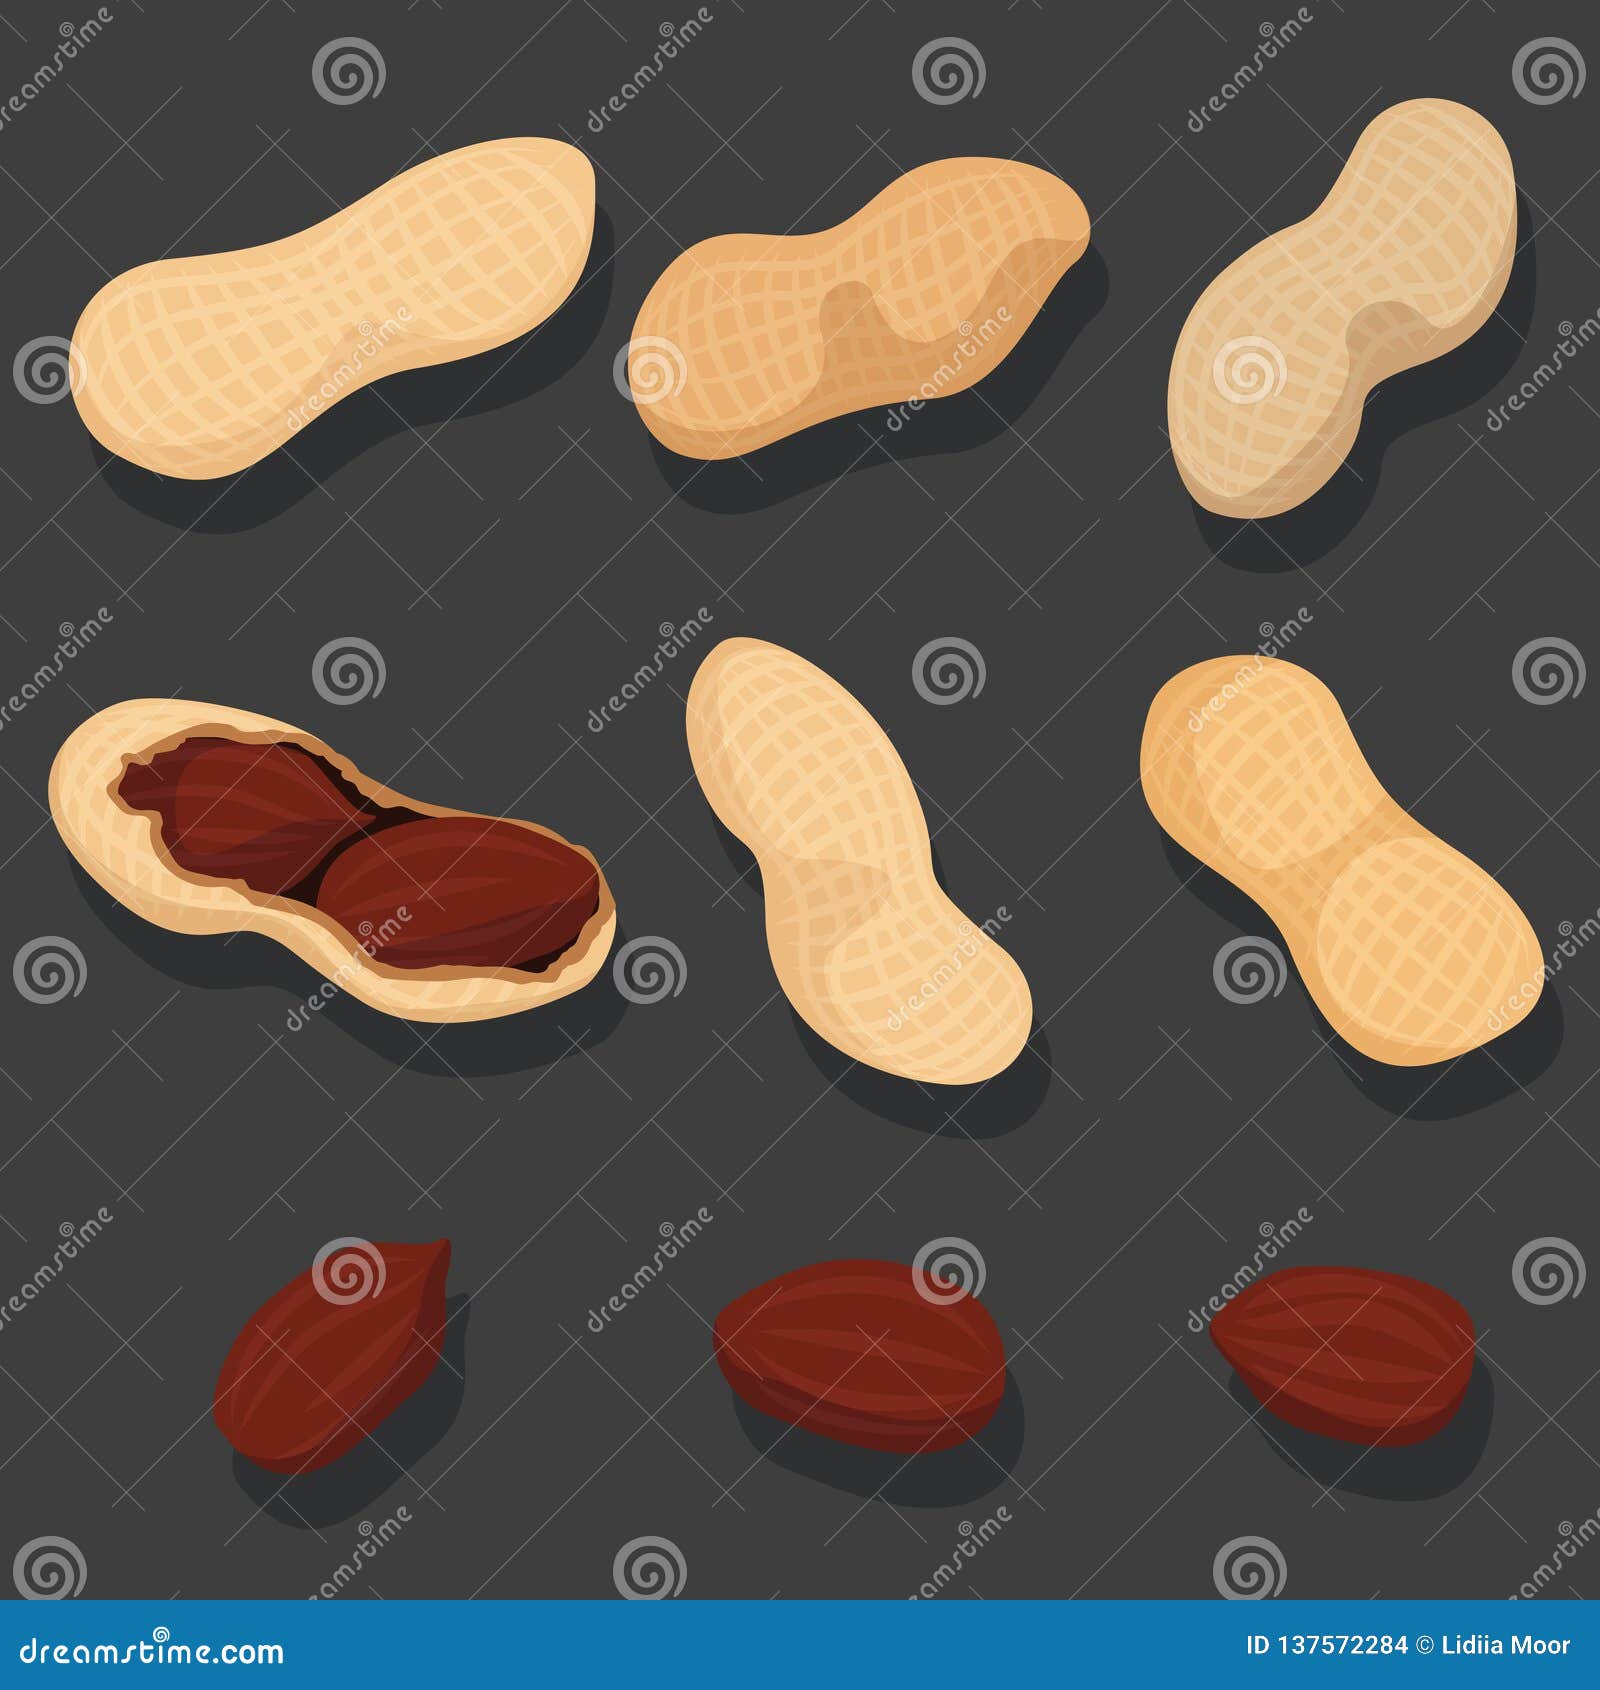  set of peanuts